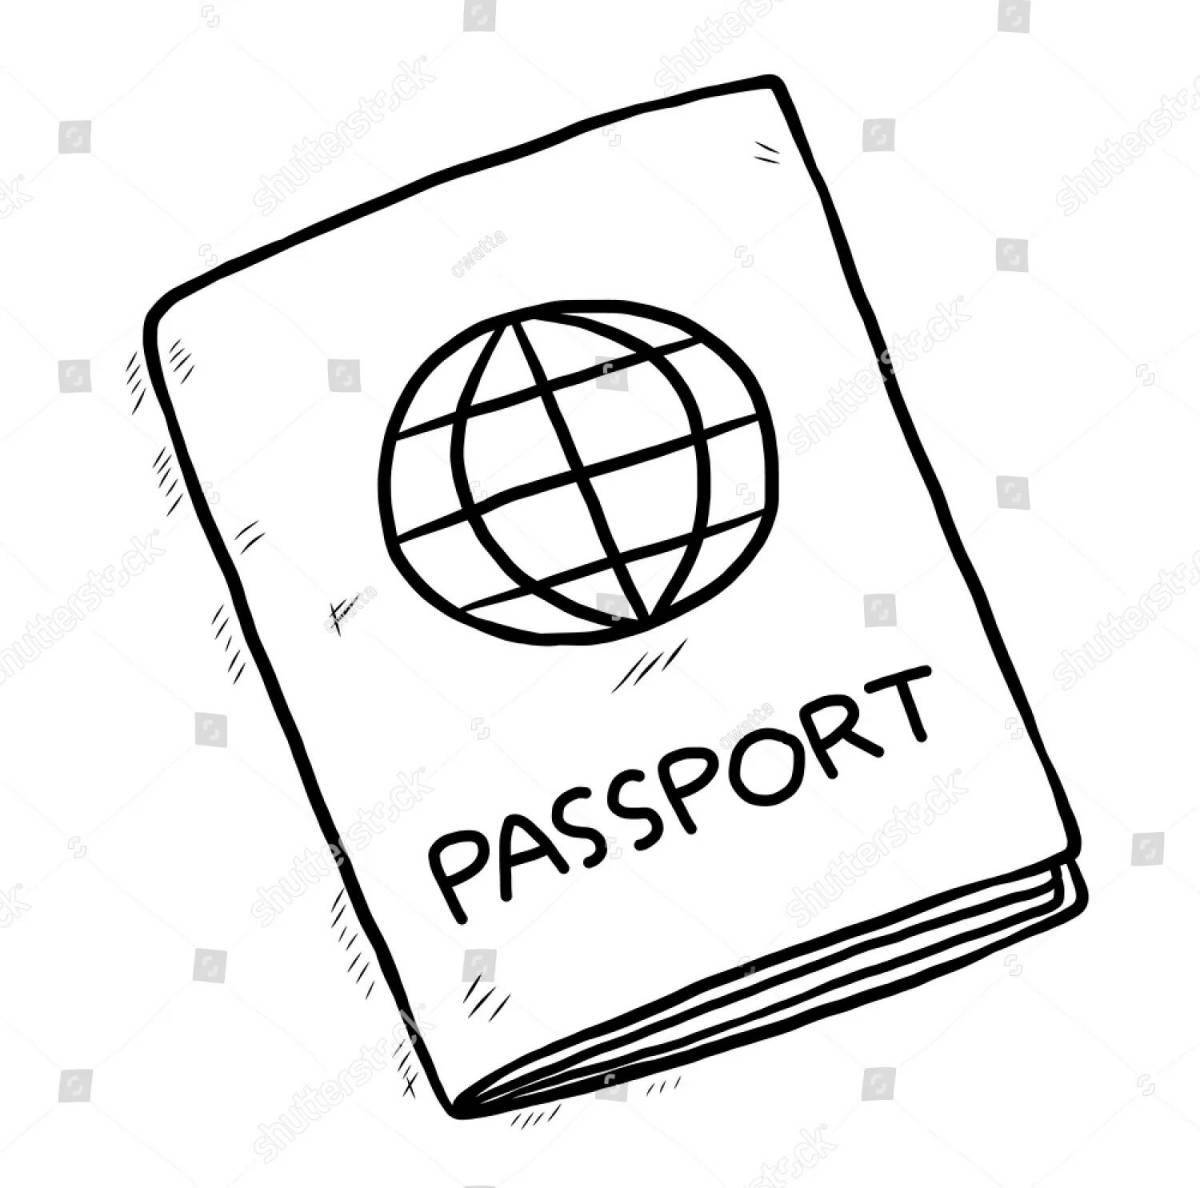 Красочная раскраска паспорта для маленьких музыкантов